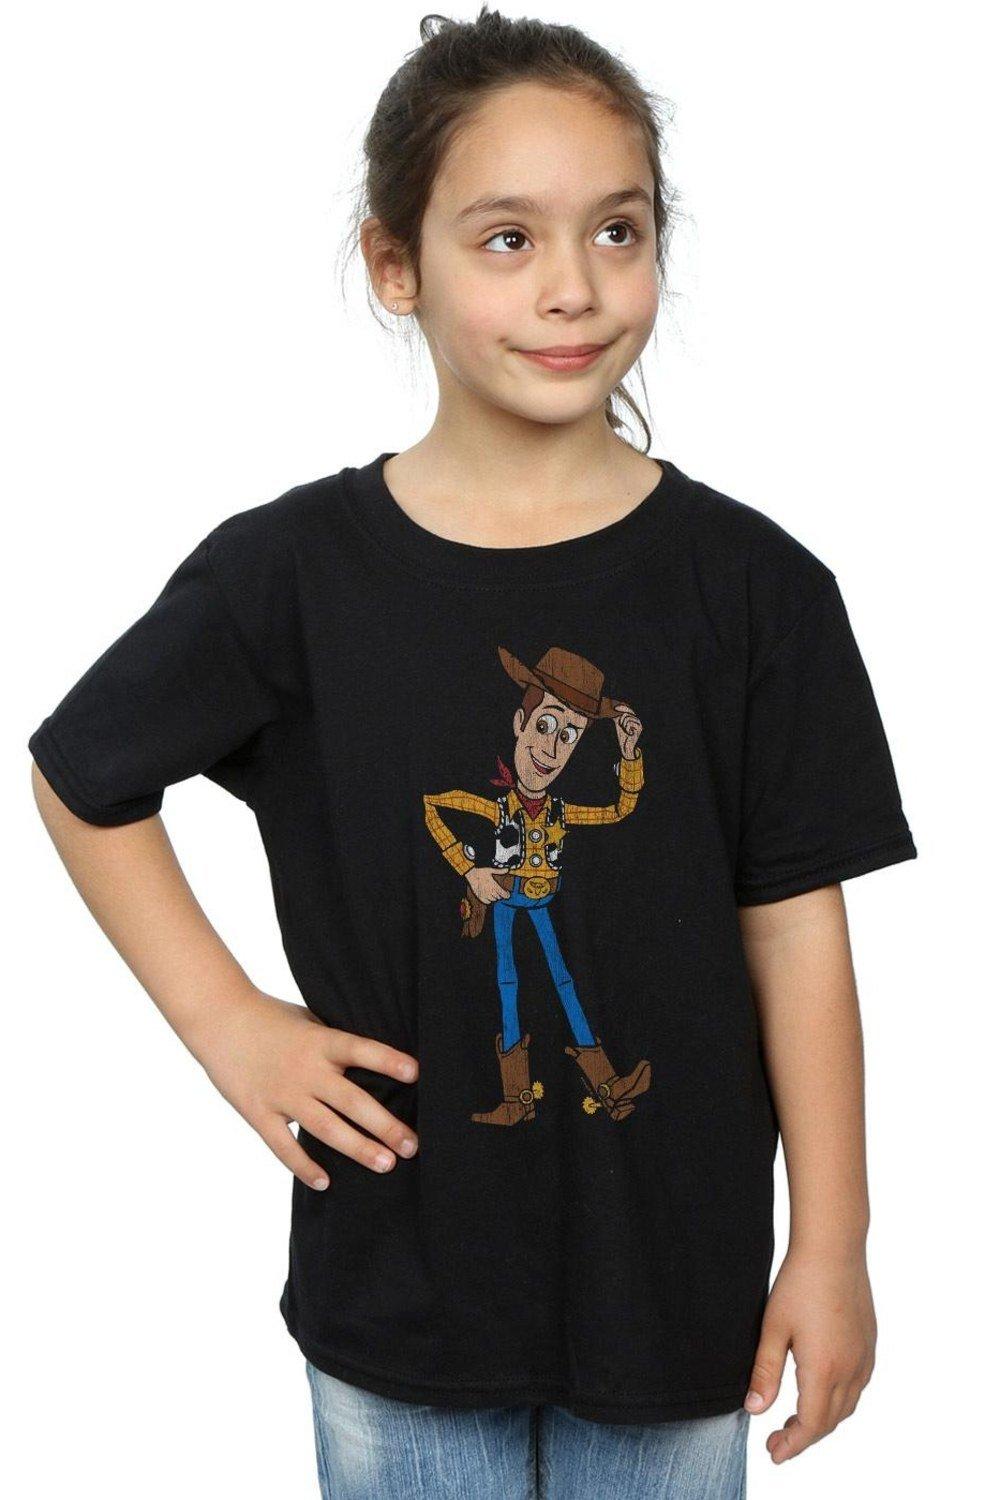 Хлопковая футболка «История игрушек 4: Шериф Вуди» Disney, черный пазлы история игрушек шериф вуди и его друзья детская логика